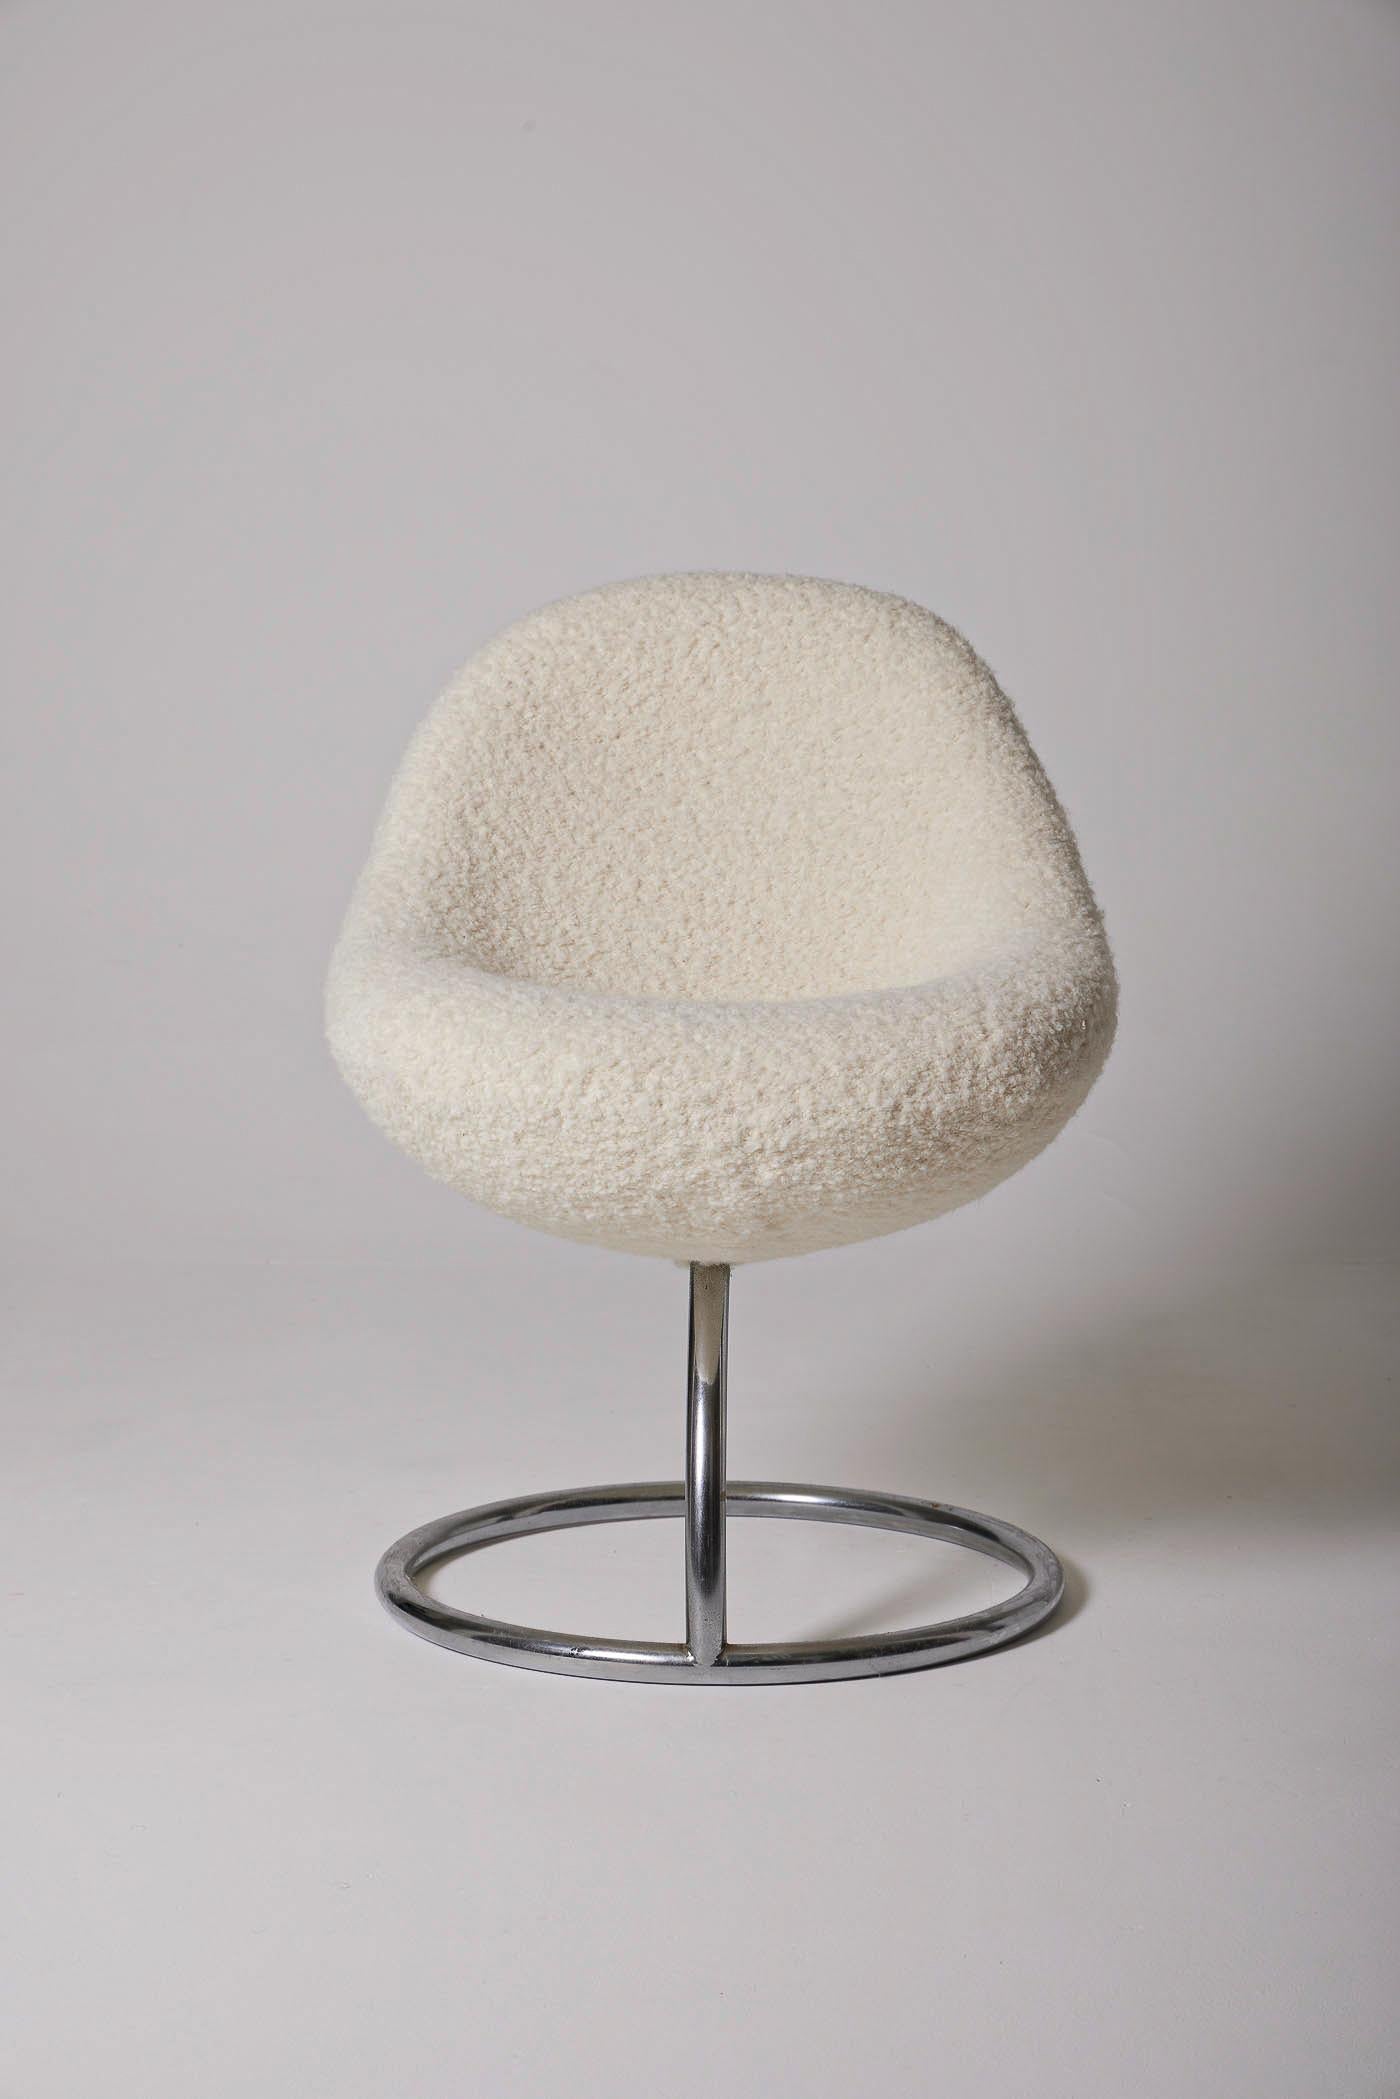 Chaise Cocoon avec assise en tissu bouclé et base en métal brossé, des années 1970. Siège retapissé en parfait état. Légers signes d'usure sur la base.
DV347